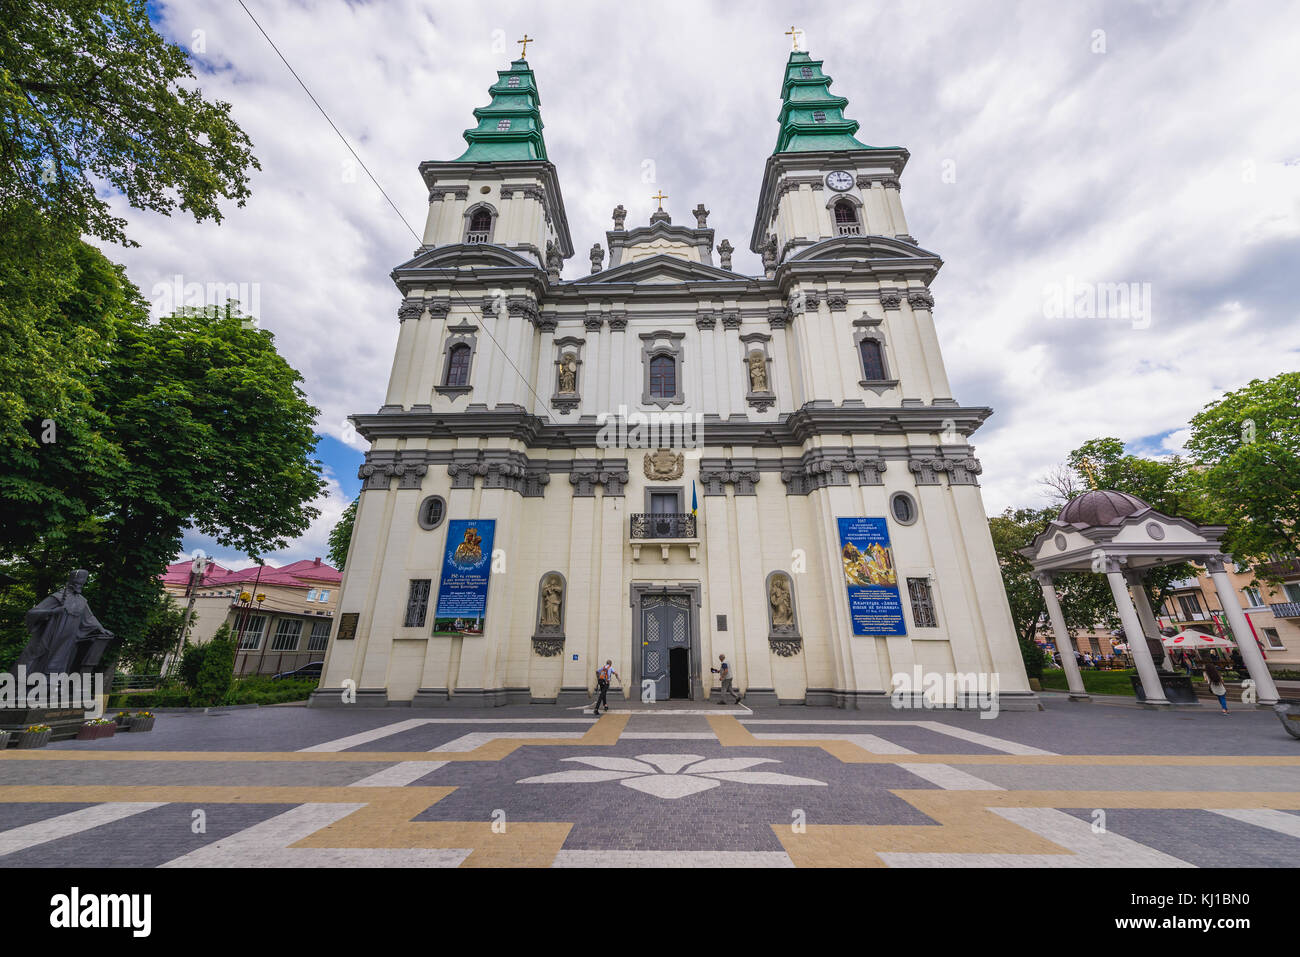 Cathédrale de l'Immaculée conception de la Sainte Vierge Marie, ancienne église dominicaine à Ternopil, centre administratif de l'oblast de Ternopil, Ukraine Banque D'Images